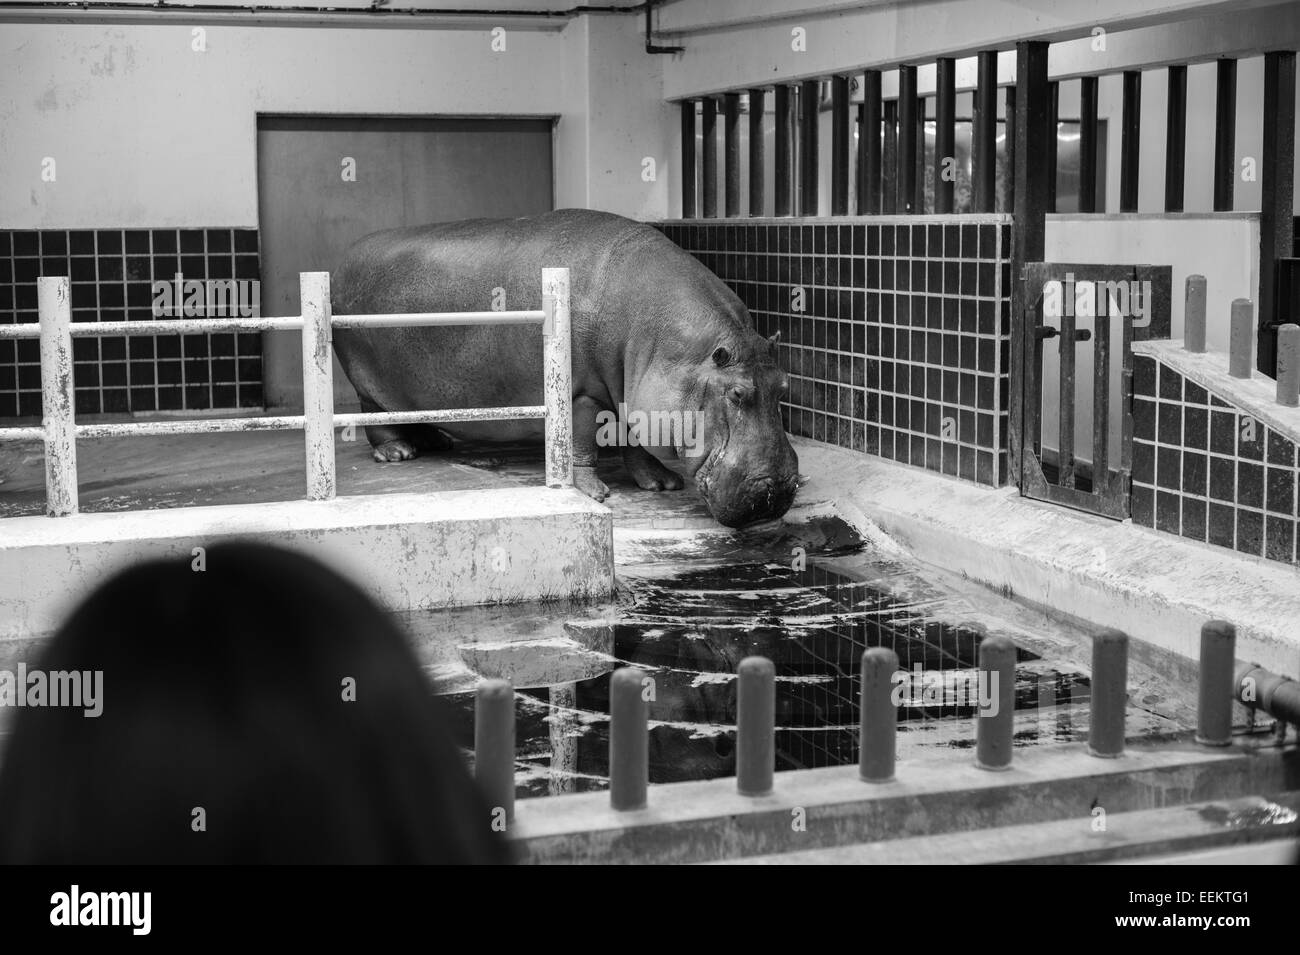 Un hippopotame se trouve dans une cage intérieure en zoo de Ueno au cours de l'hiver Banque D'Images